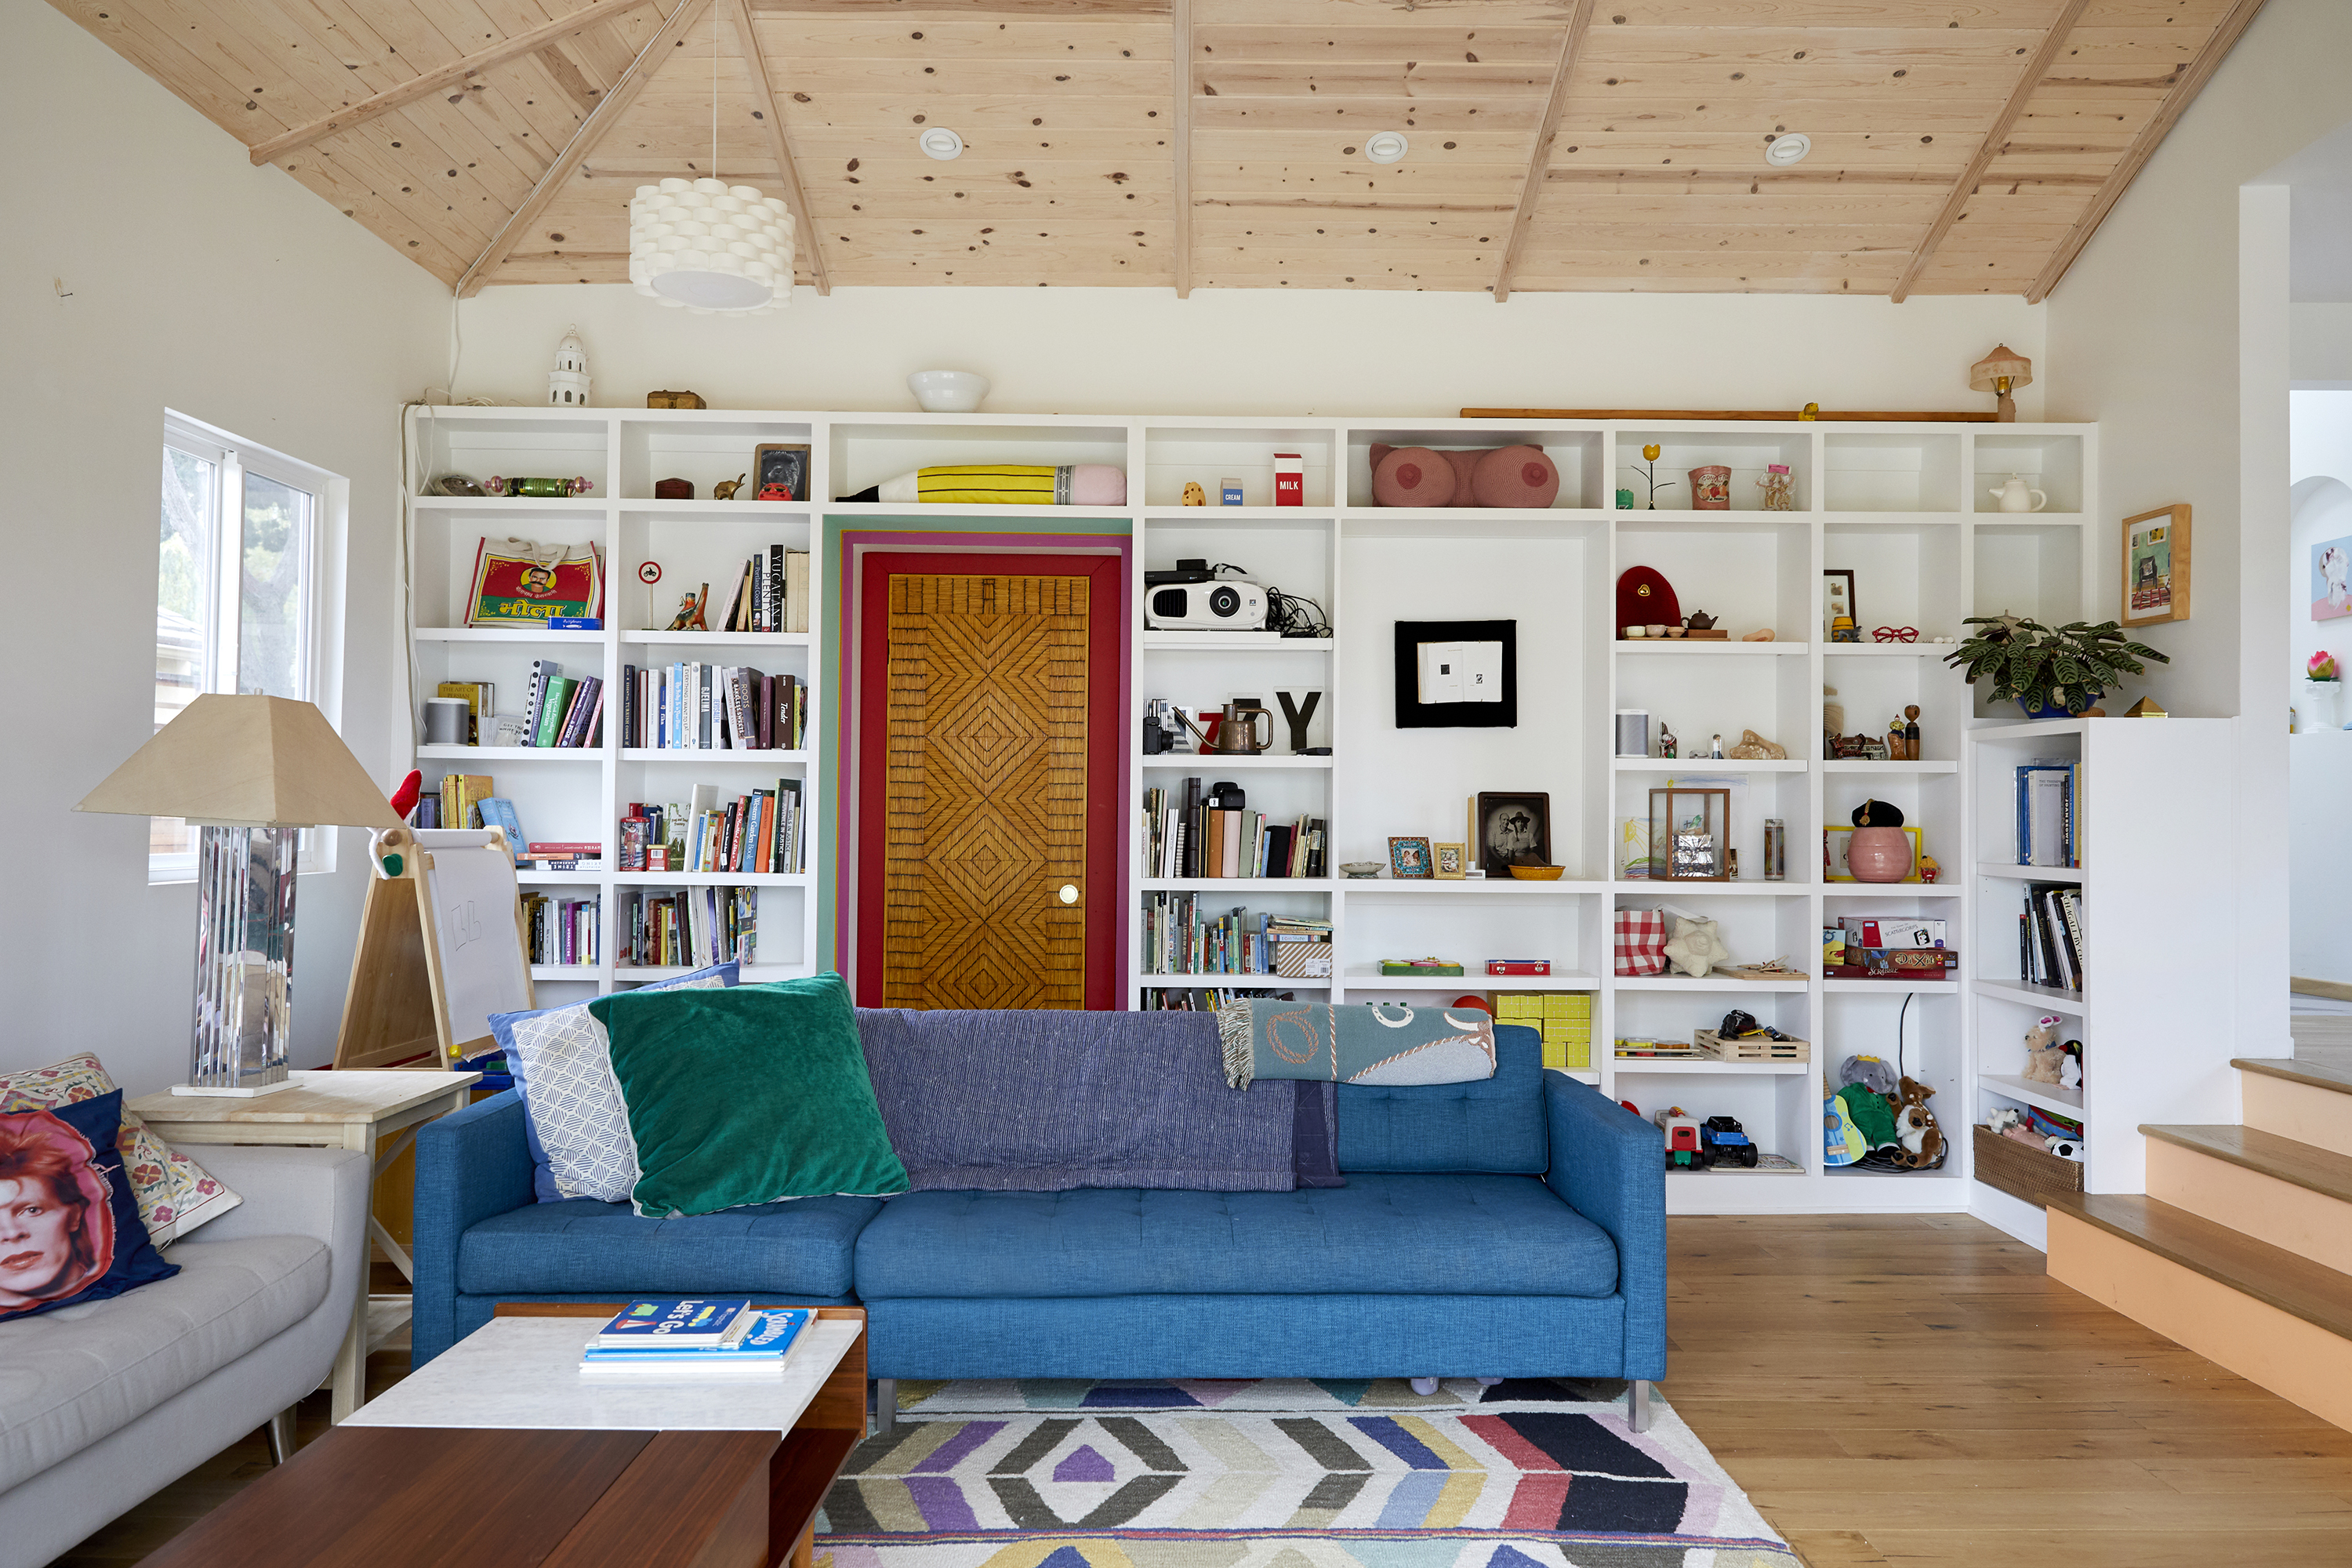 有两张沙发的客厅。一张沙发是蓝色的，另一张是灰色的。其中一面墙上有摆满书籍和艺术品的书架。书柜用漆成红色的门框围绕着一扇门。